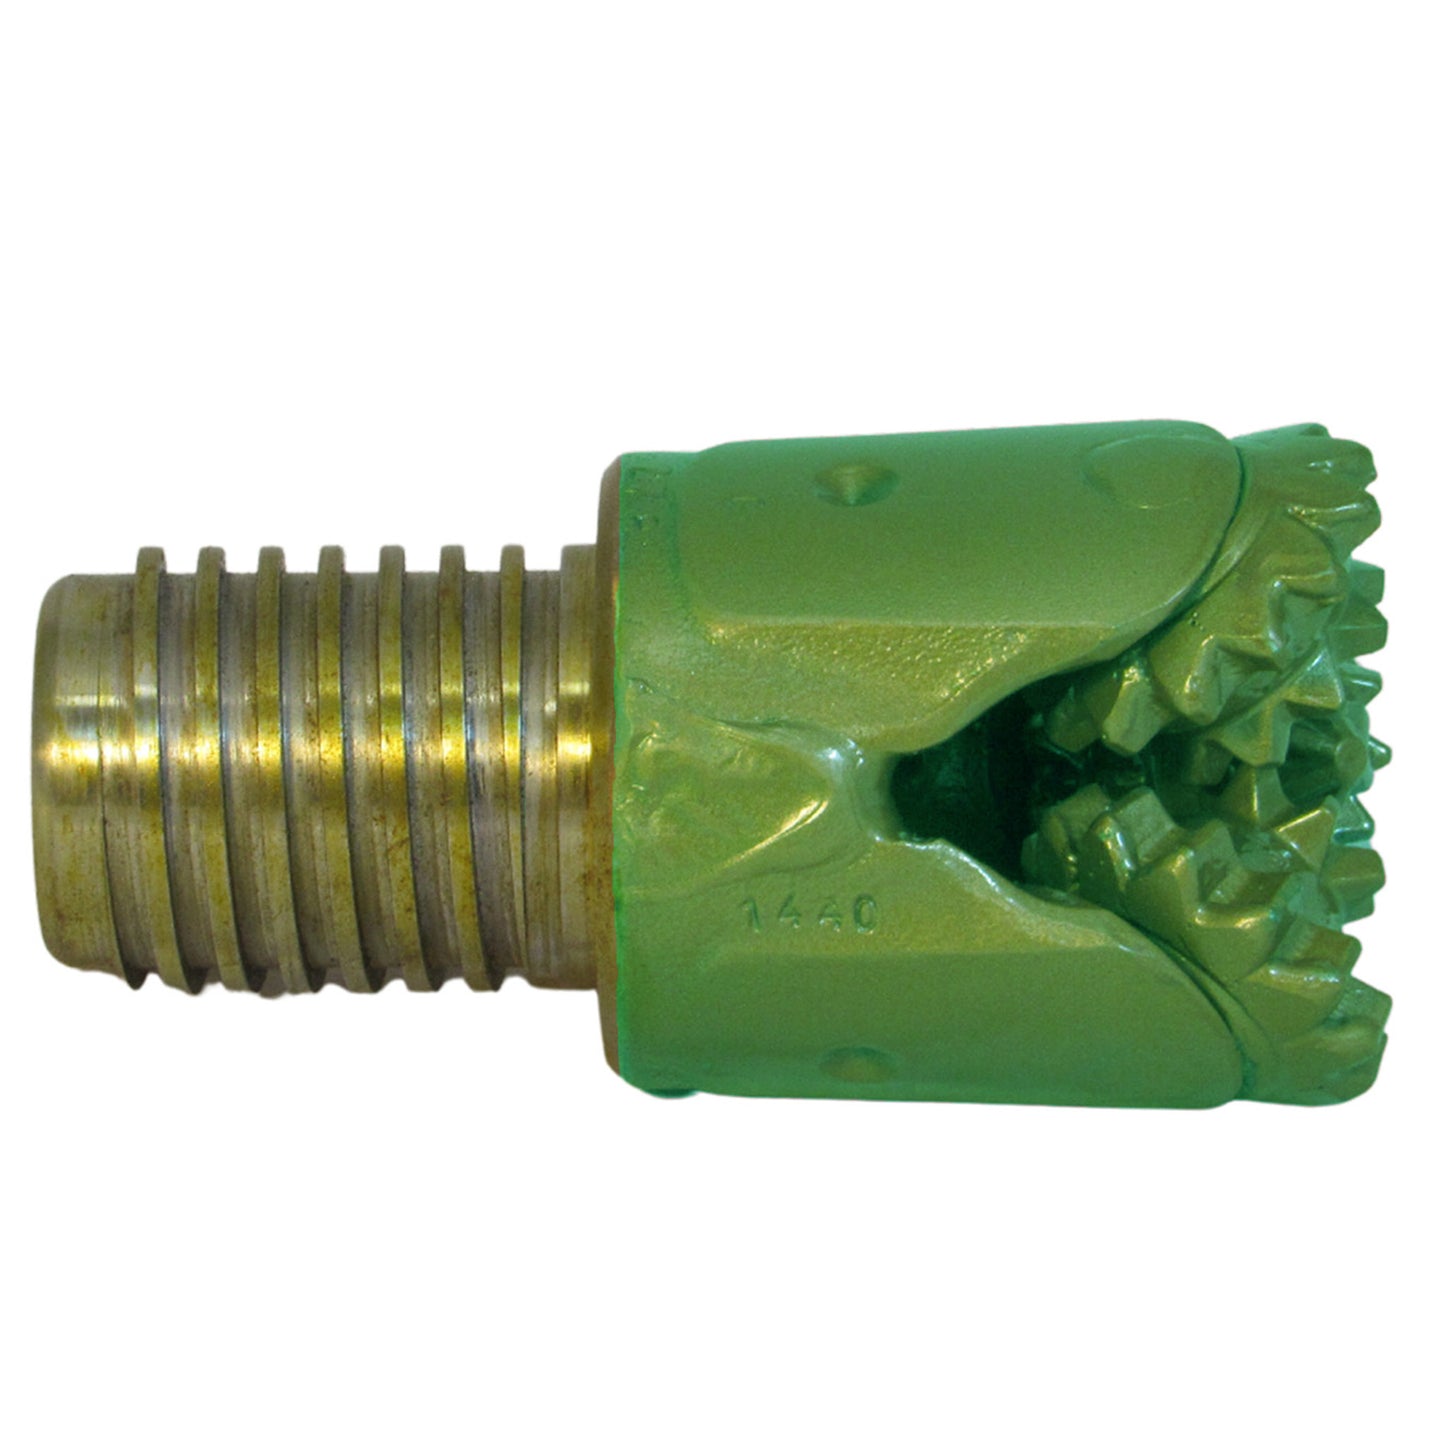 IADC 321 Rock Bit 3 ¼" Steel Tooth - N Rod Pin